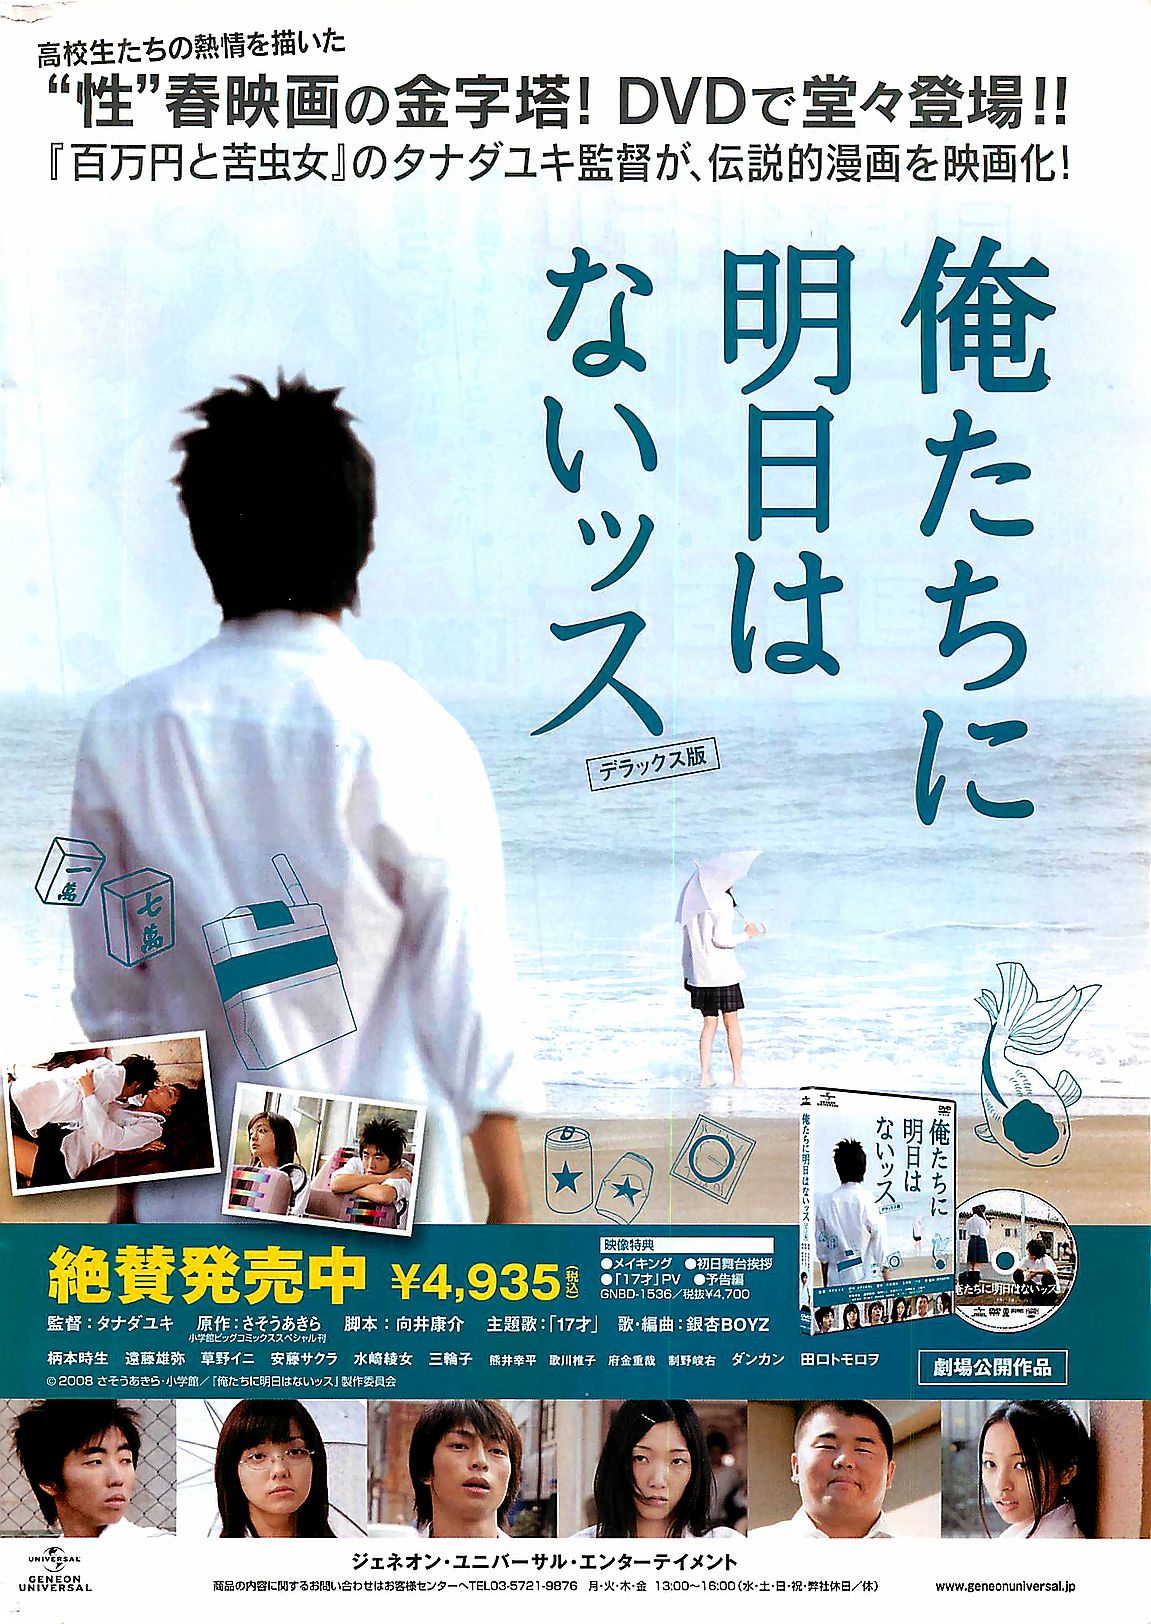 月刊ドキッ! 2009年7月号 Vol.153